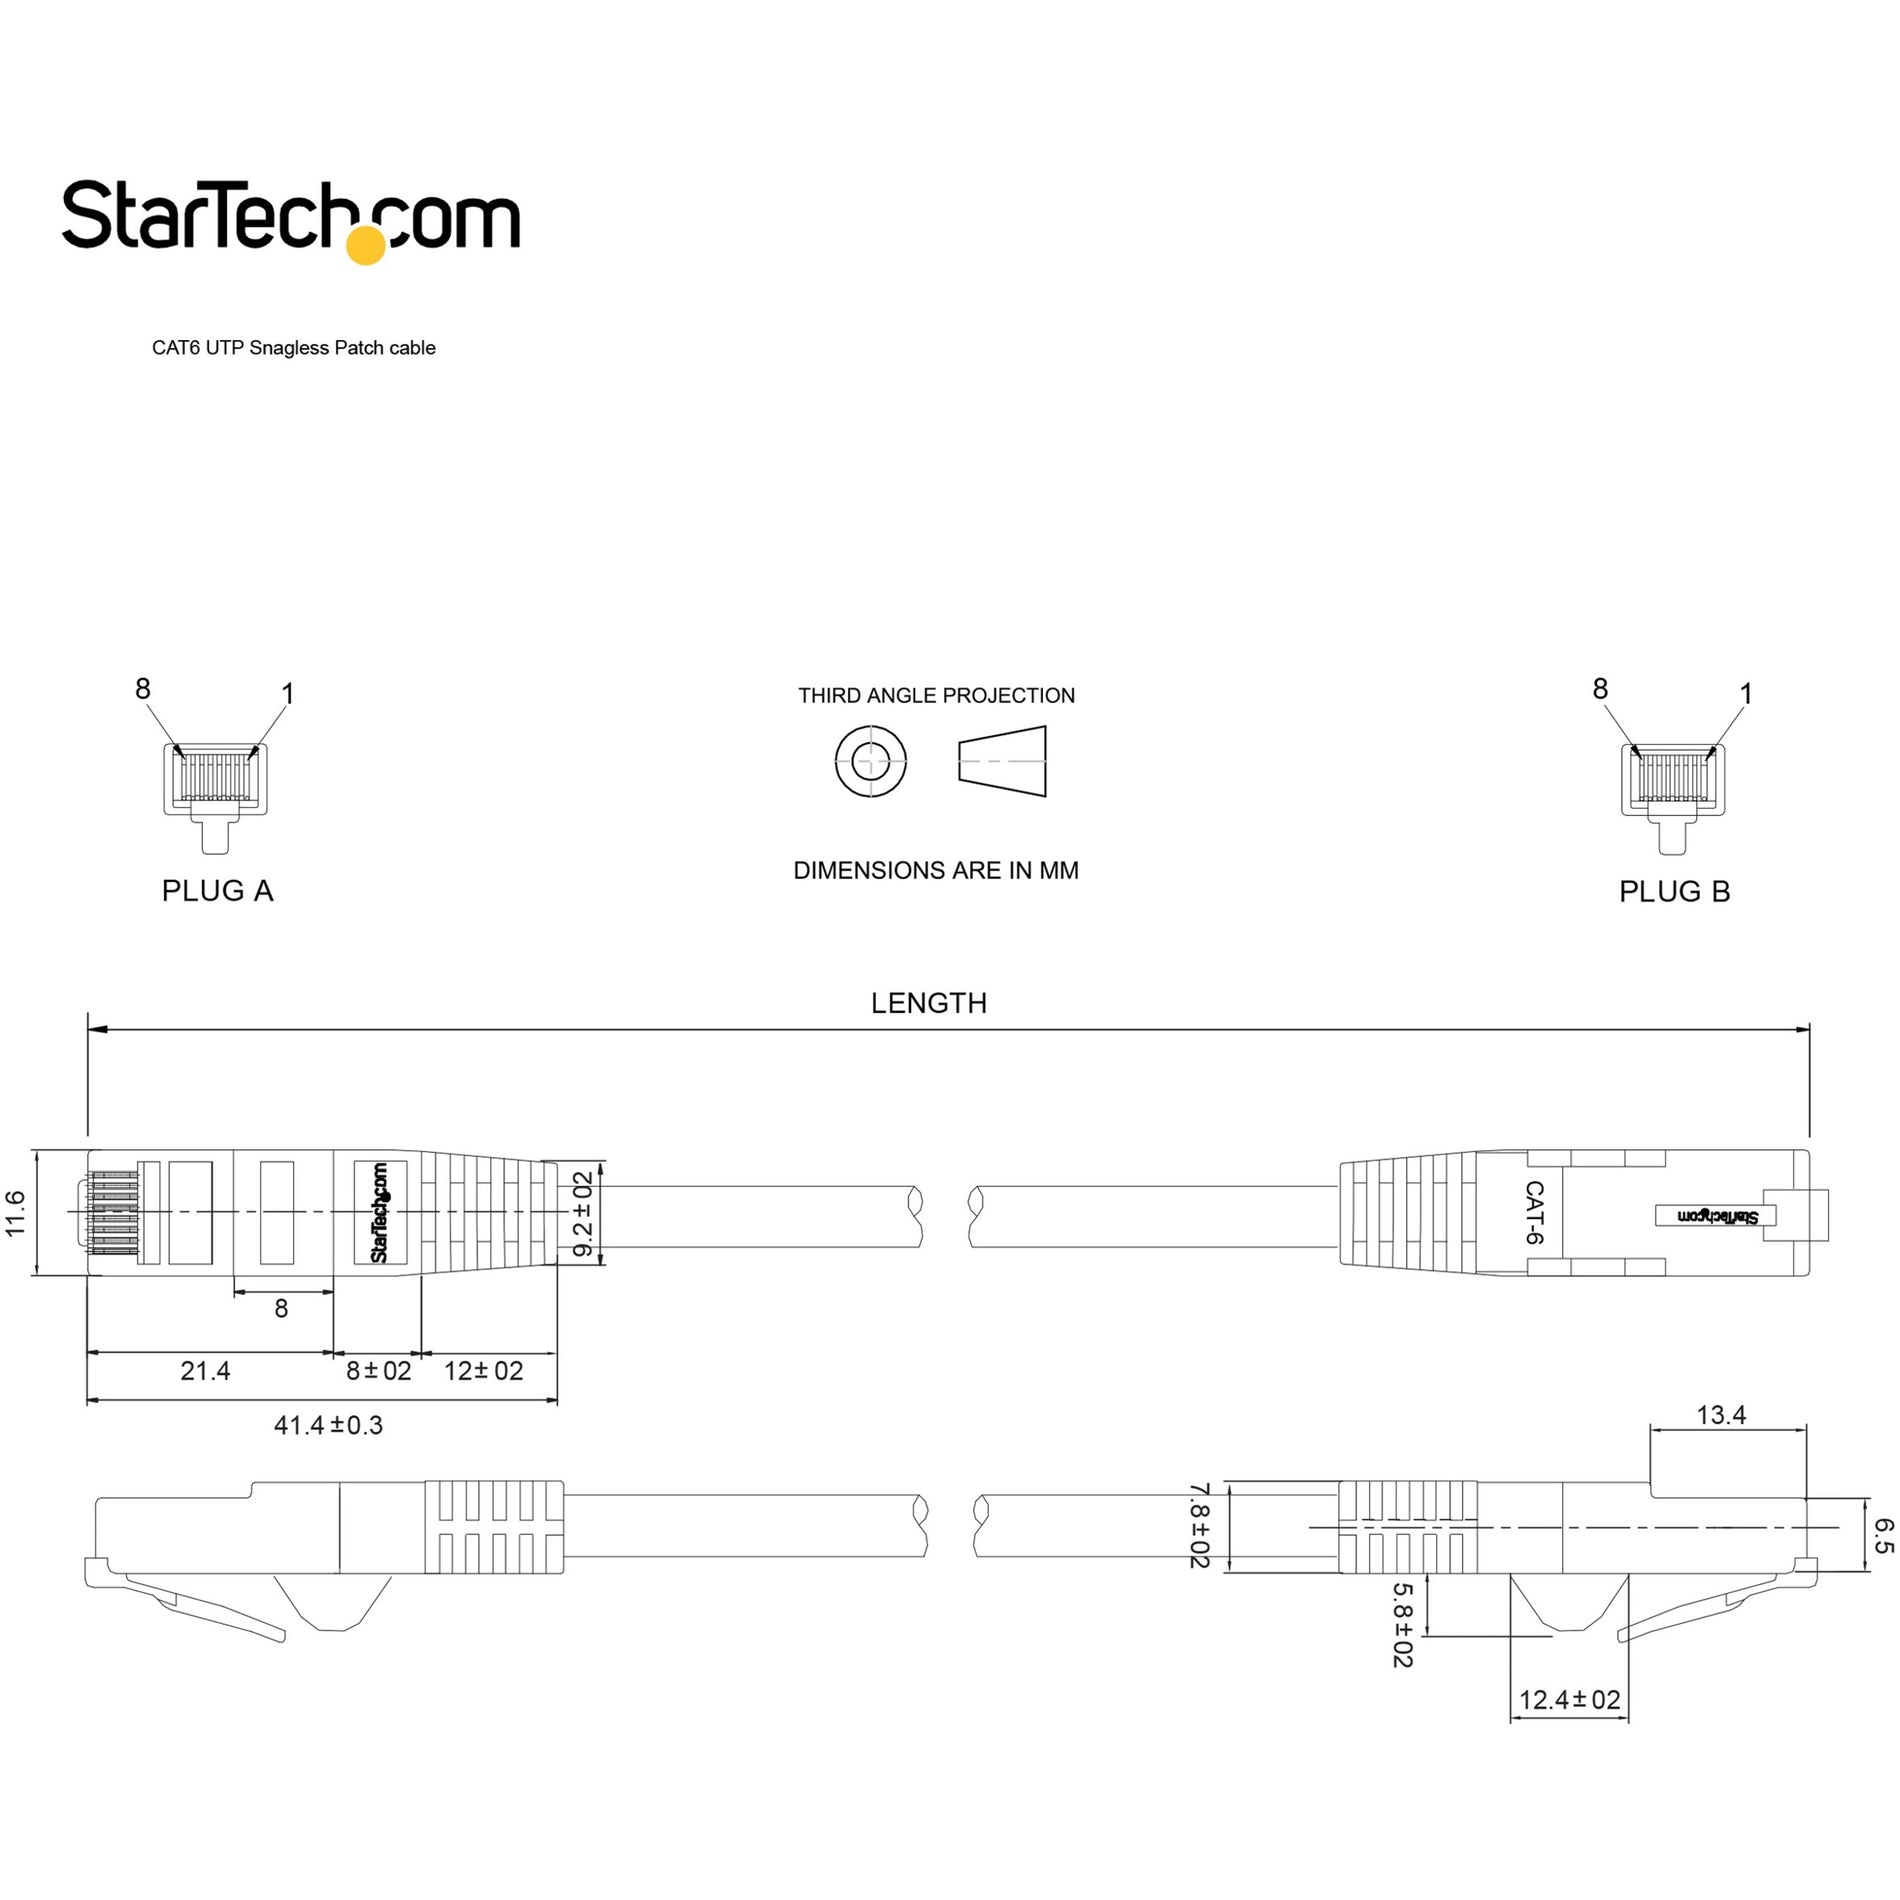 星际科技 (StarTech.com) N6PATCH5BL 类别6 网线 5 英尺 蓝色 Snagless UTP ETL 验证 (Verified)